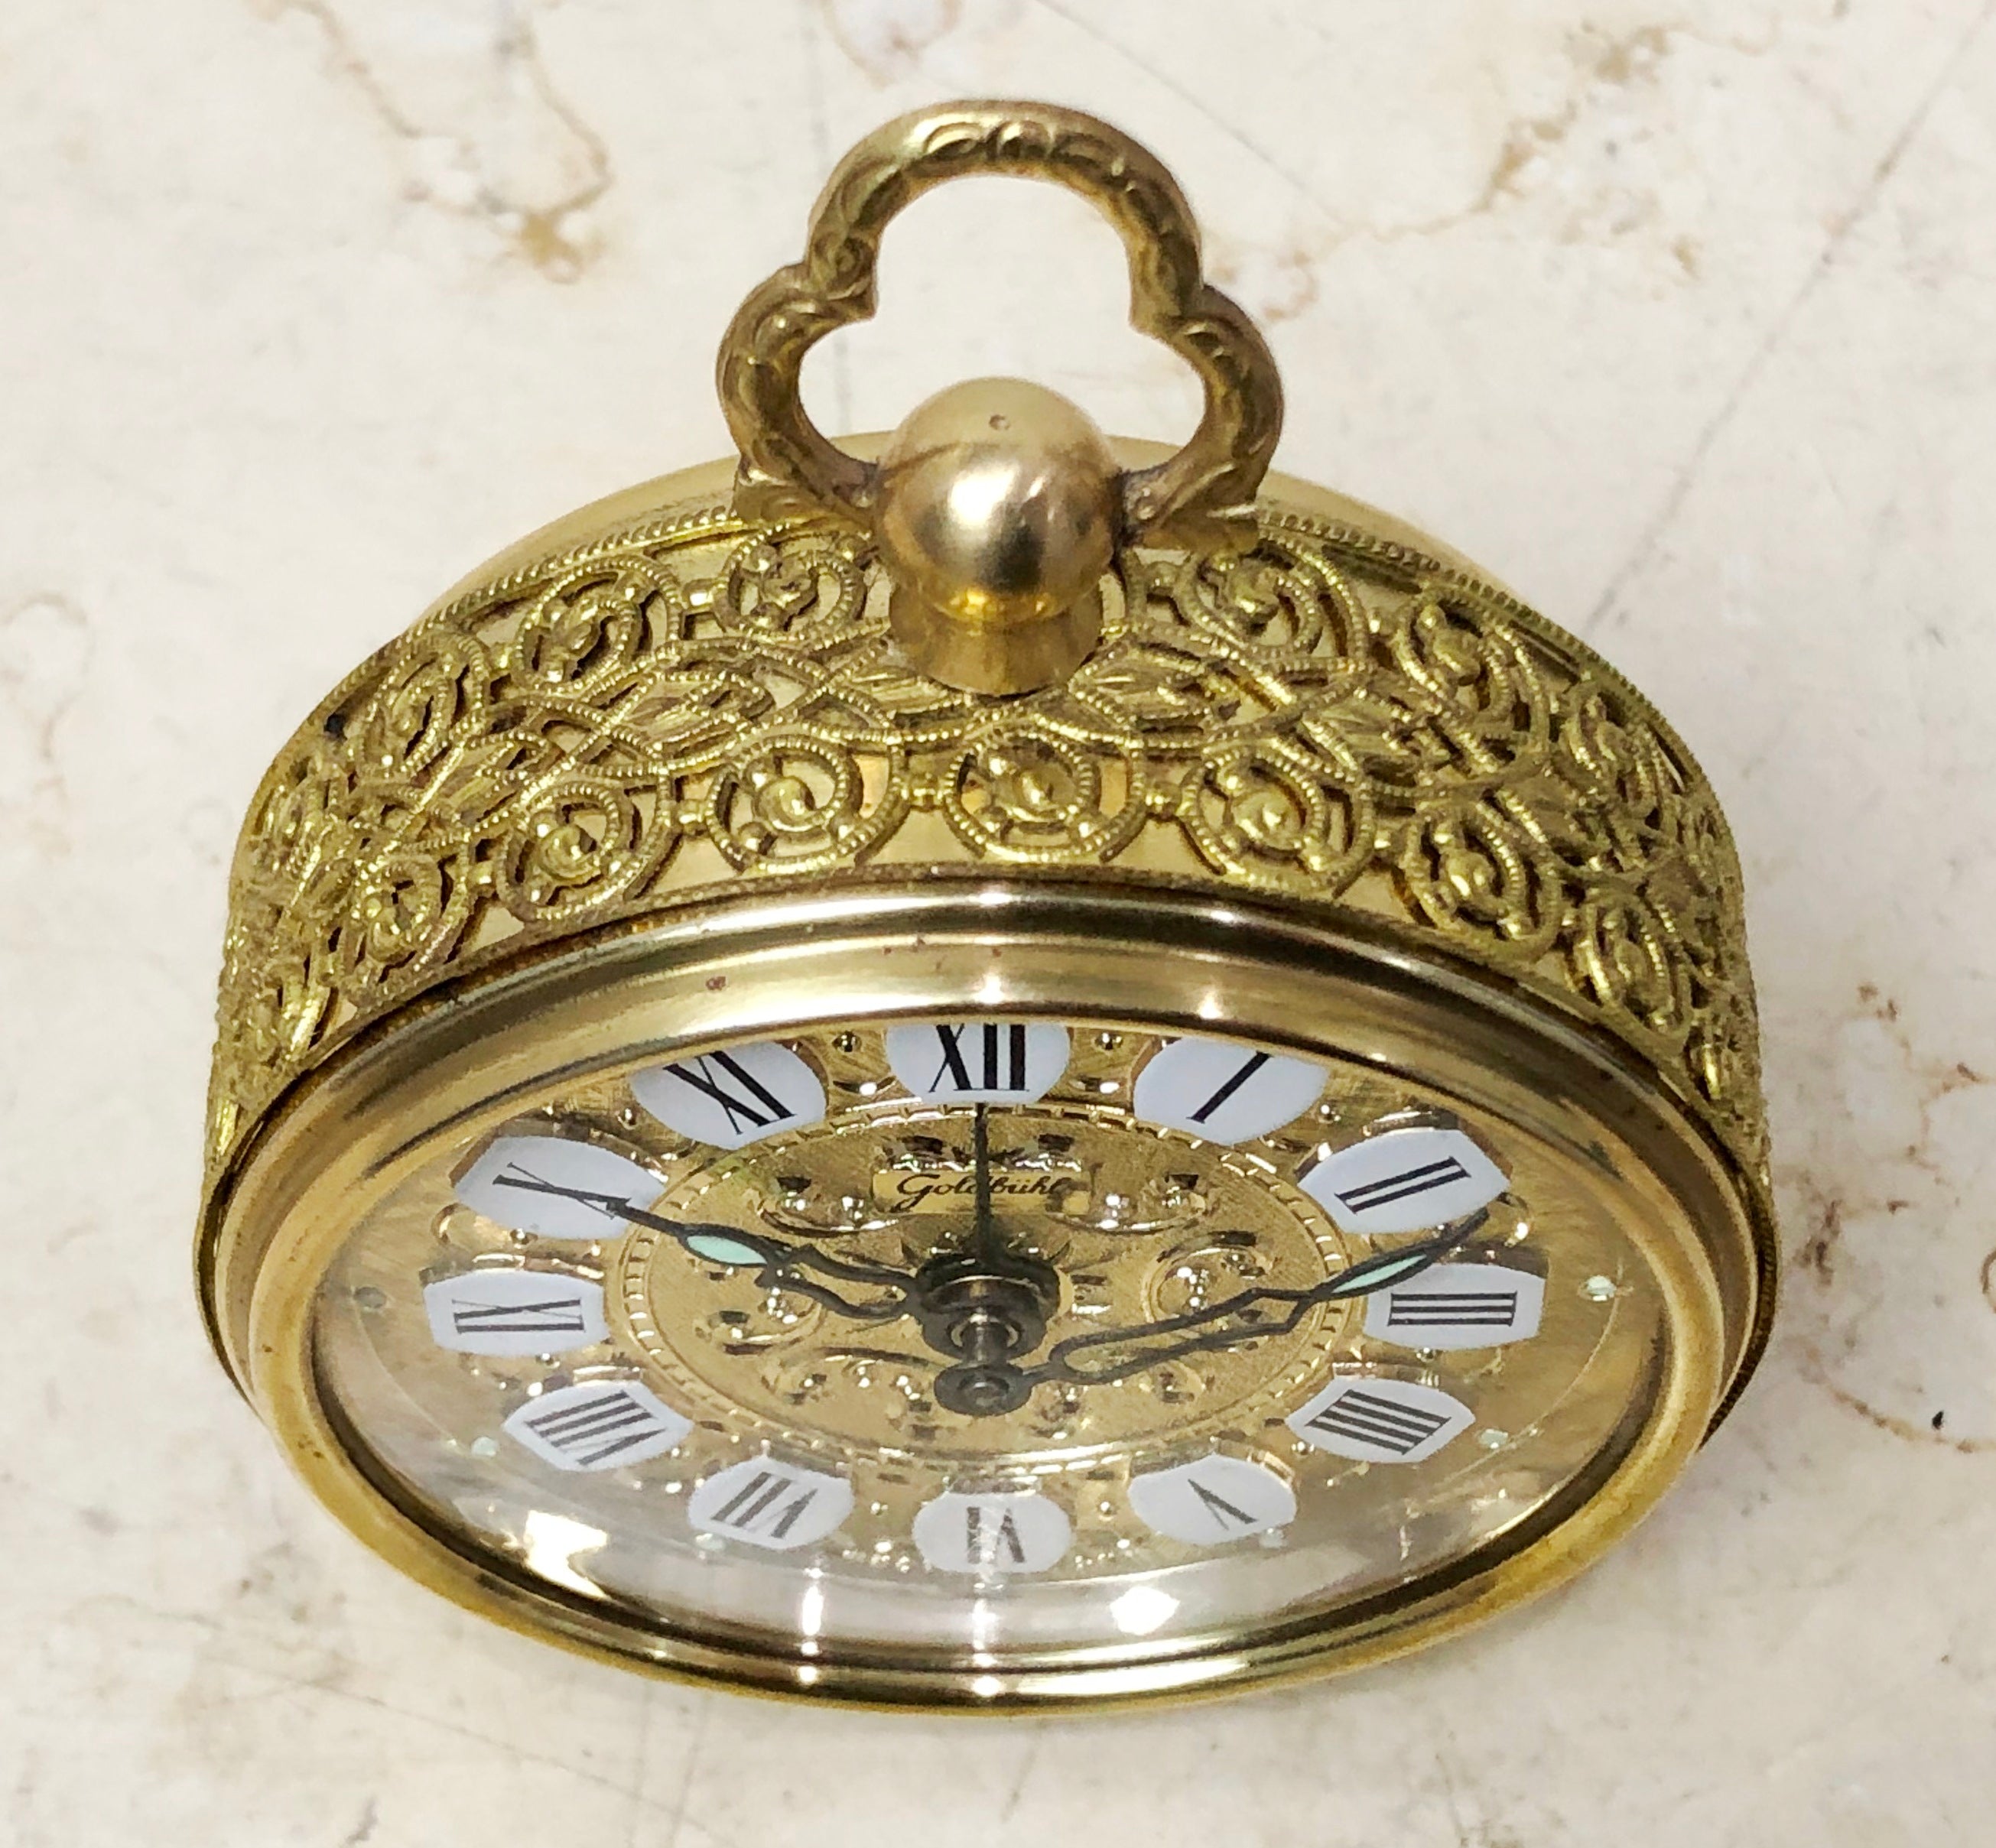 Vintage Goldbuhl German Alarm Bedside Desk Clock | eXibit collection